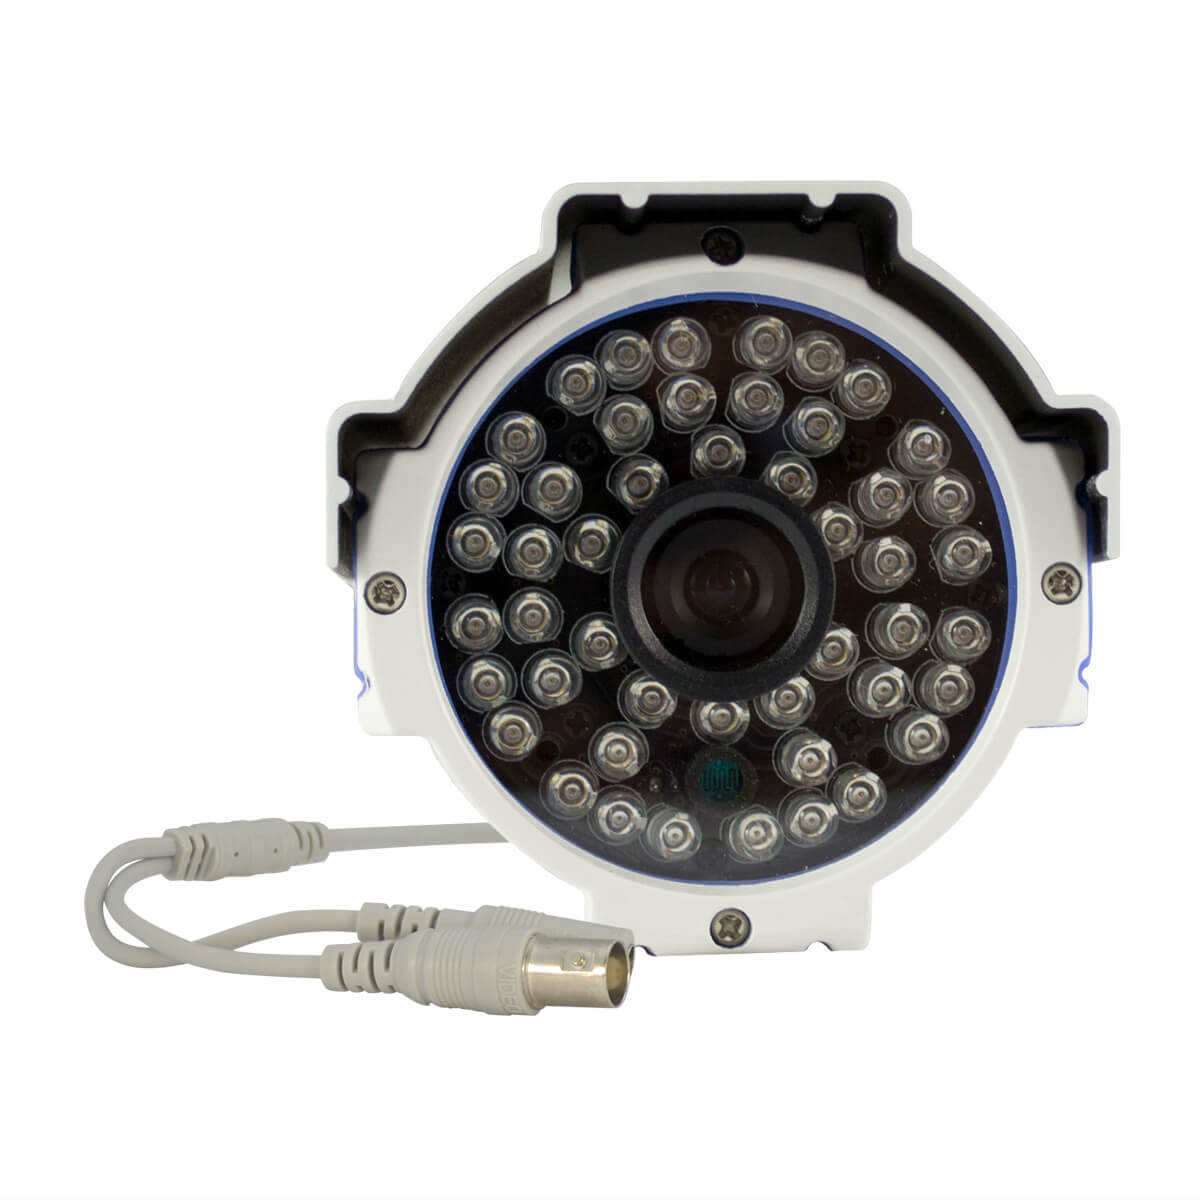 Camara Bazuca, 1/3 SONY Exview, 700TVL, lente 6mm, 48 LED, 40m, IP66